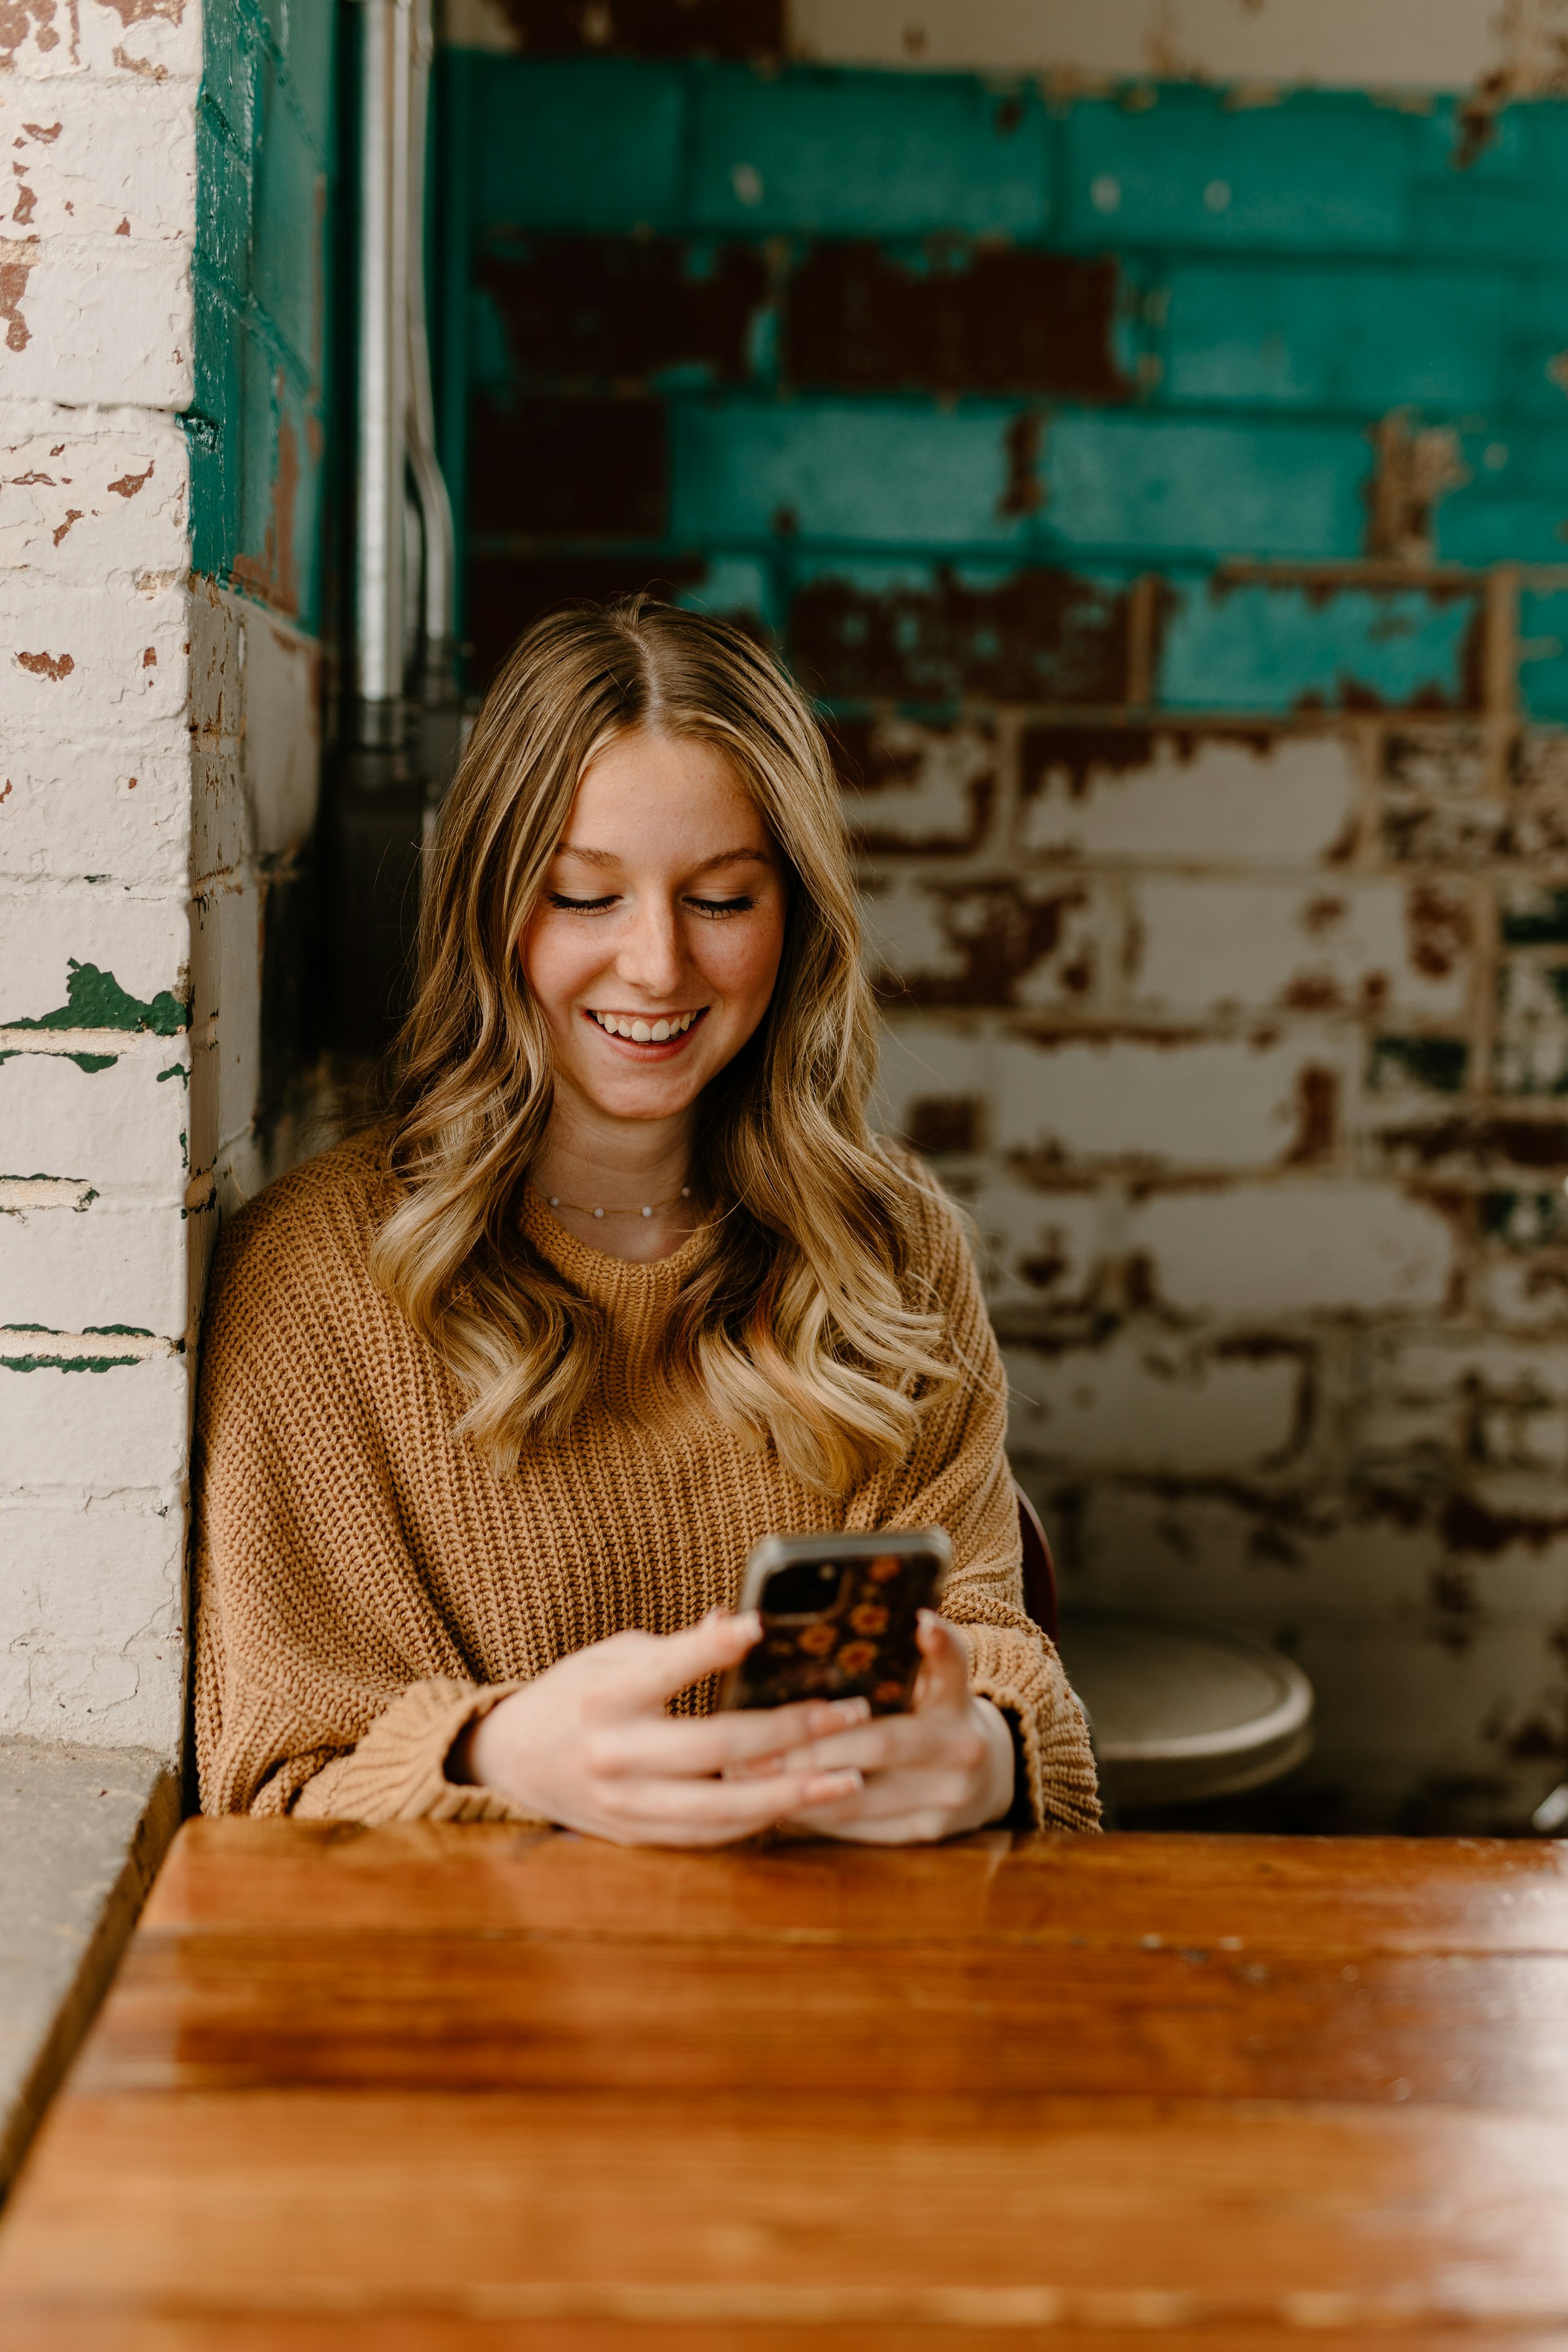 Una mujer sonríe mientras envía mensajes por el móvil | Fuente: Unsplash